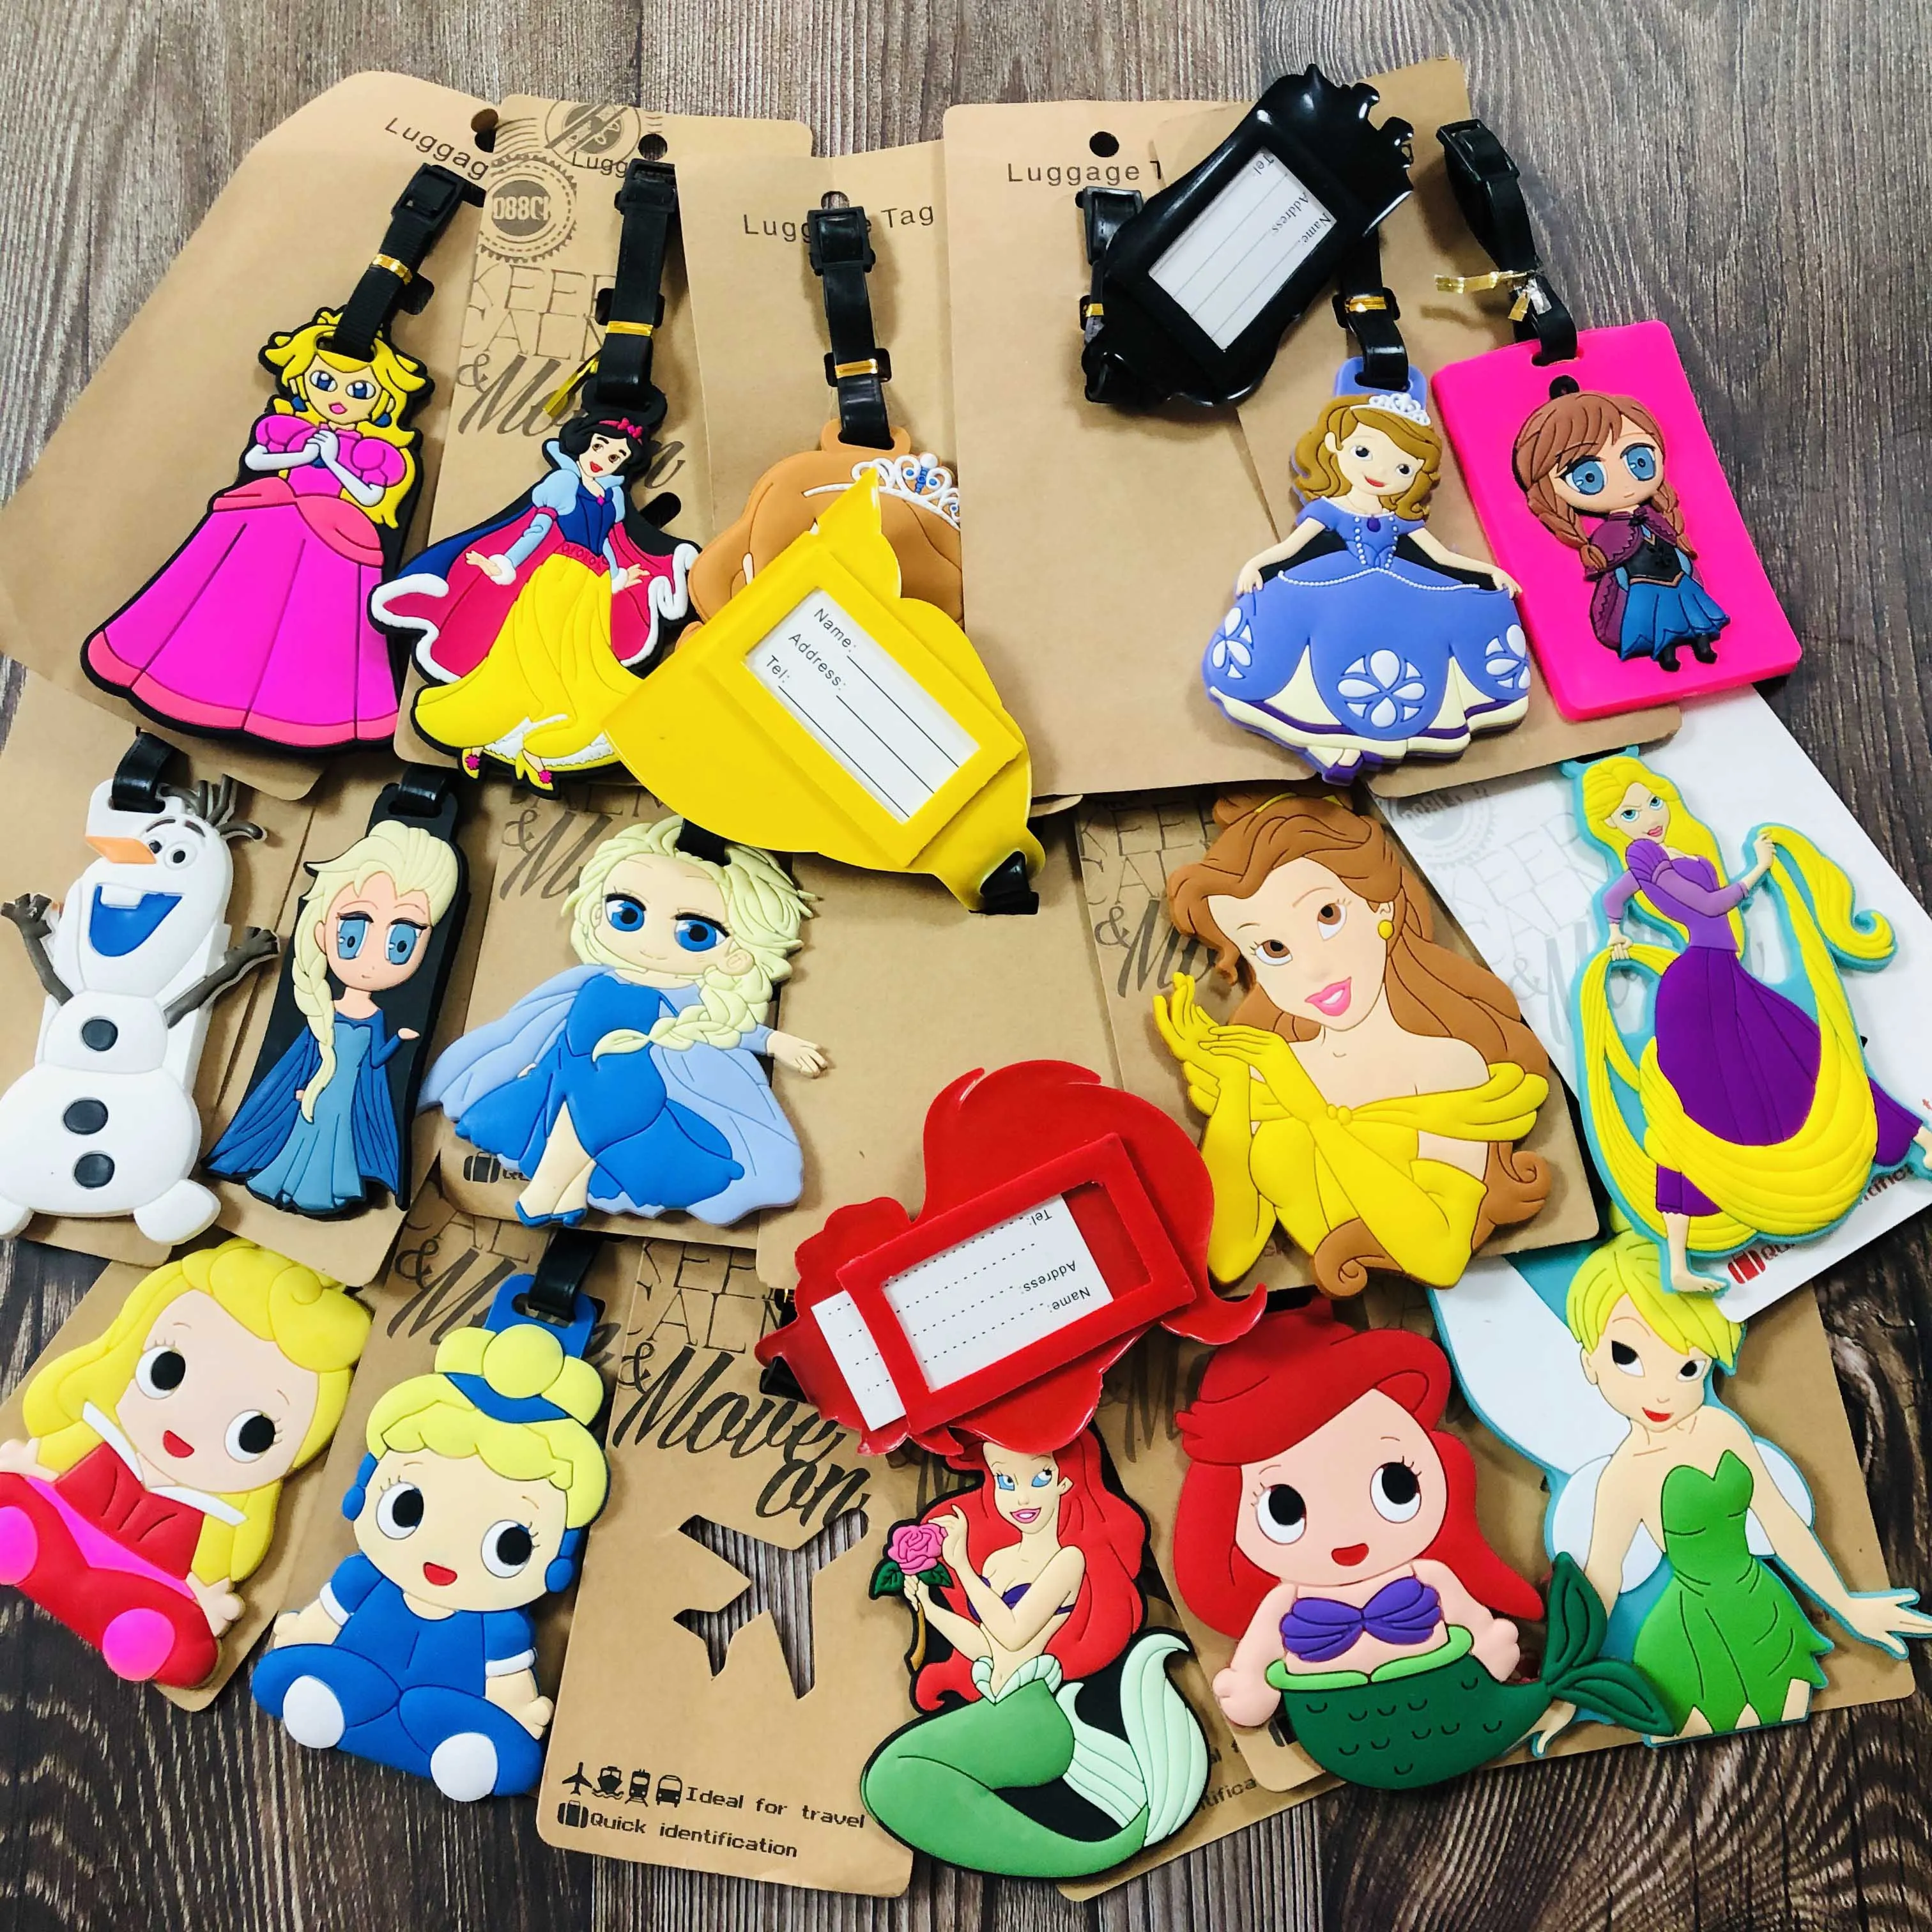 Принцесса серии аниме аксессуары для путешествий багажная бирка на чемодан ID портативный держатель тегов багажные этикетки подарки